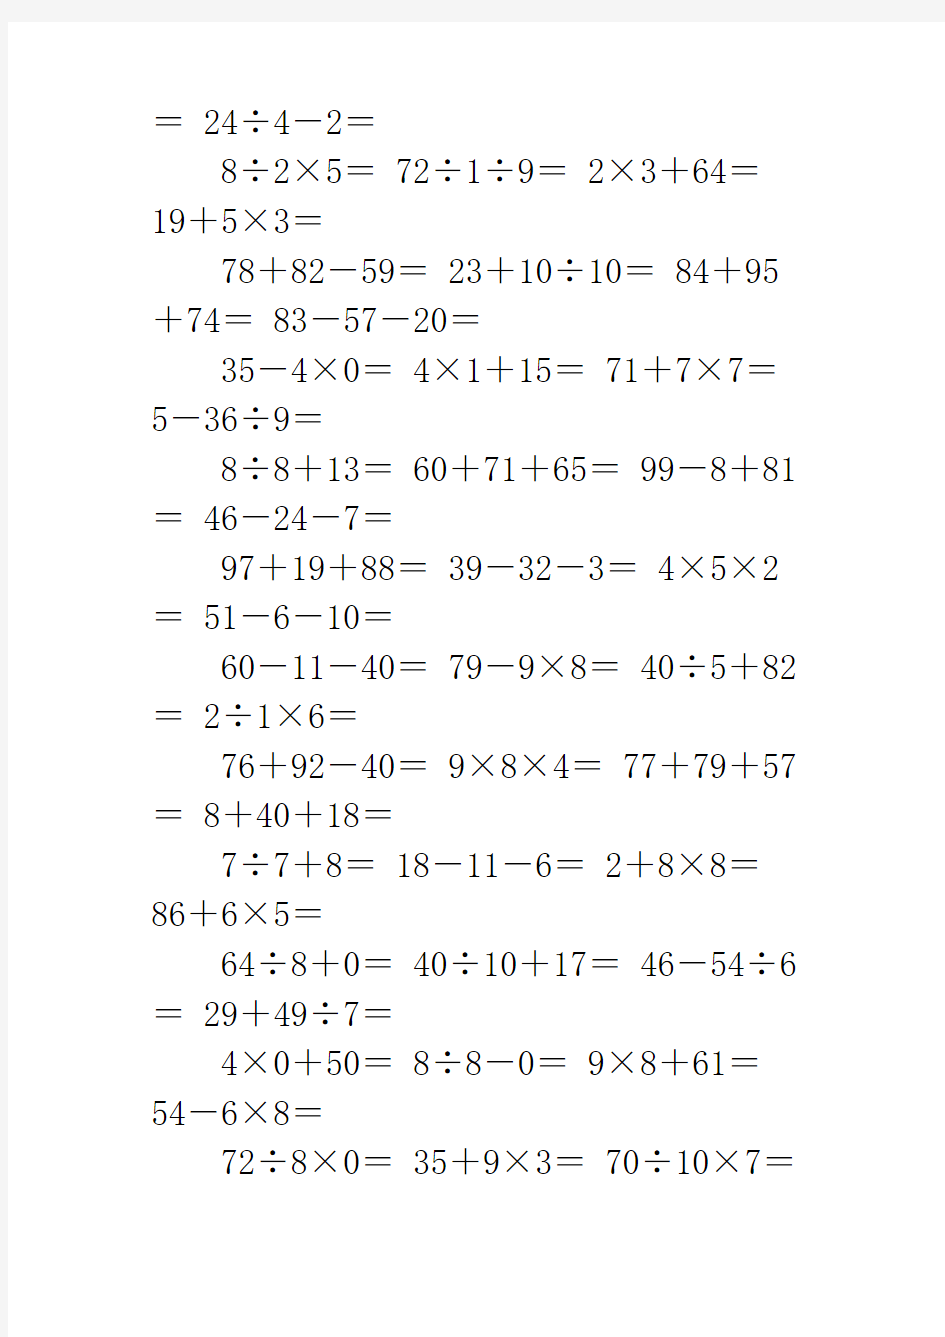 二年级乘法口算题100道 二年级数学口算题